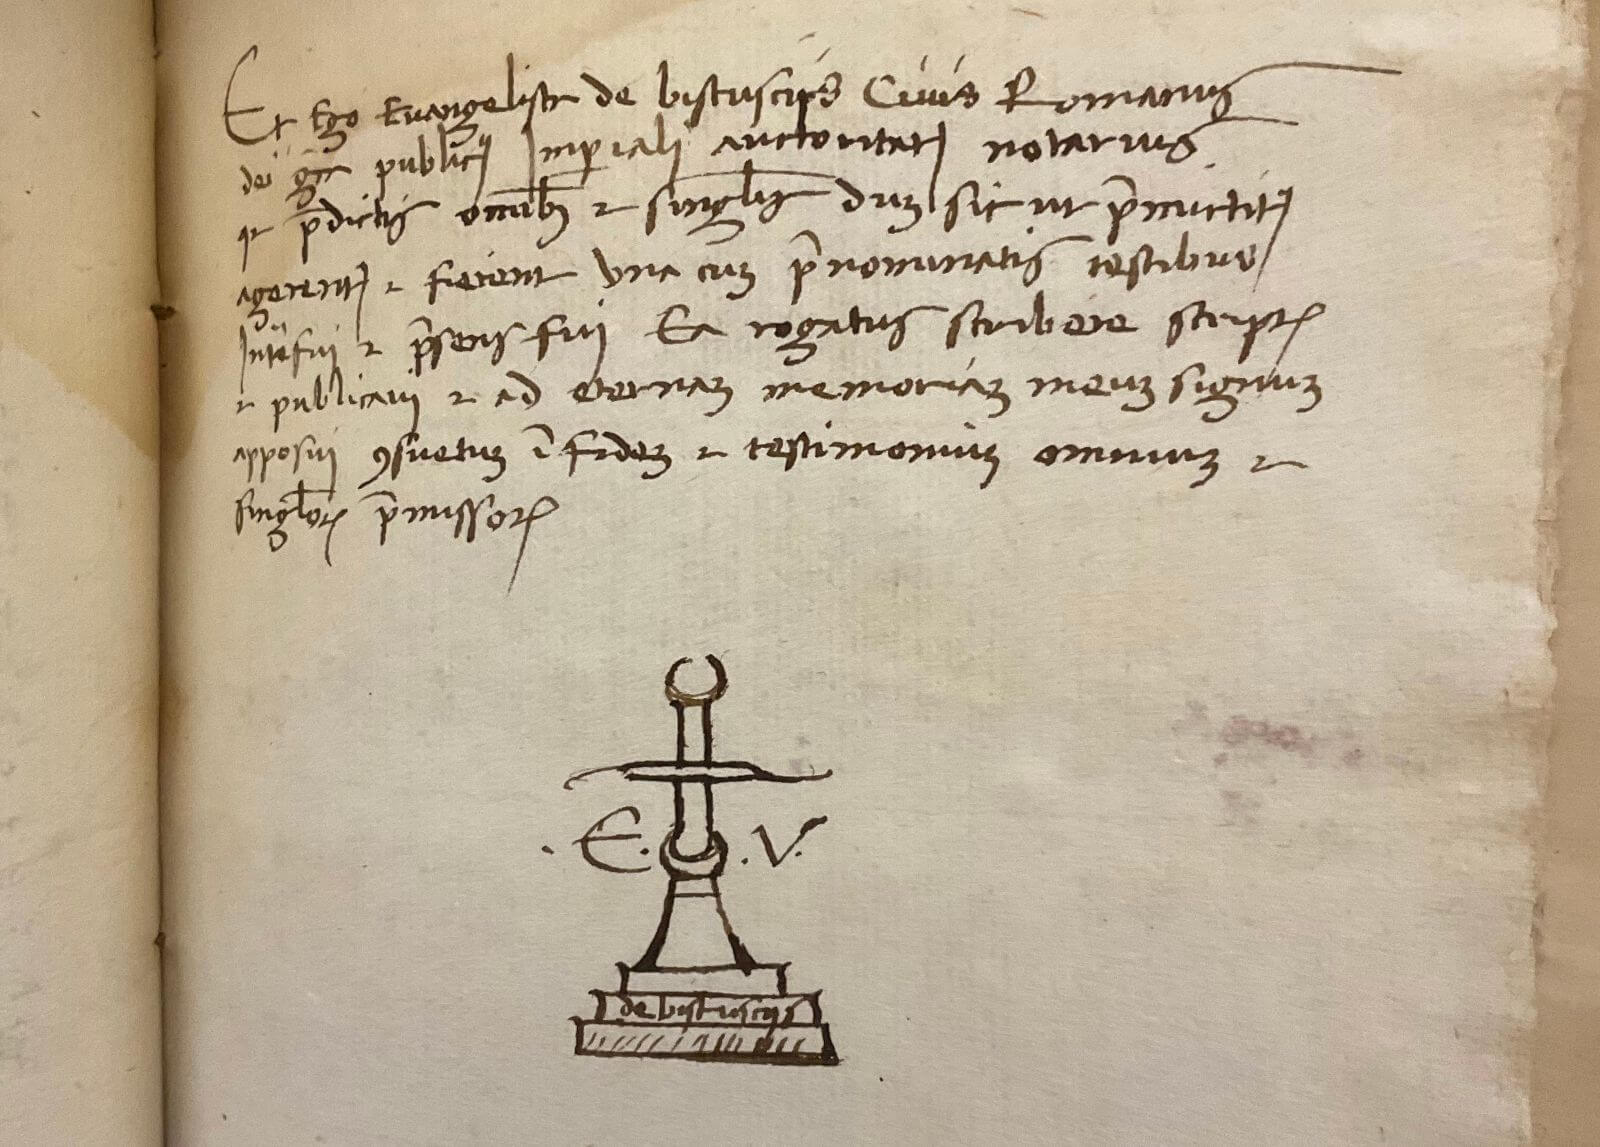 acta notarial siglo XV peste negra